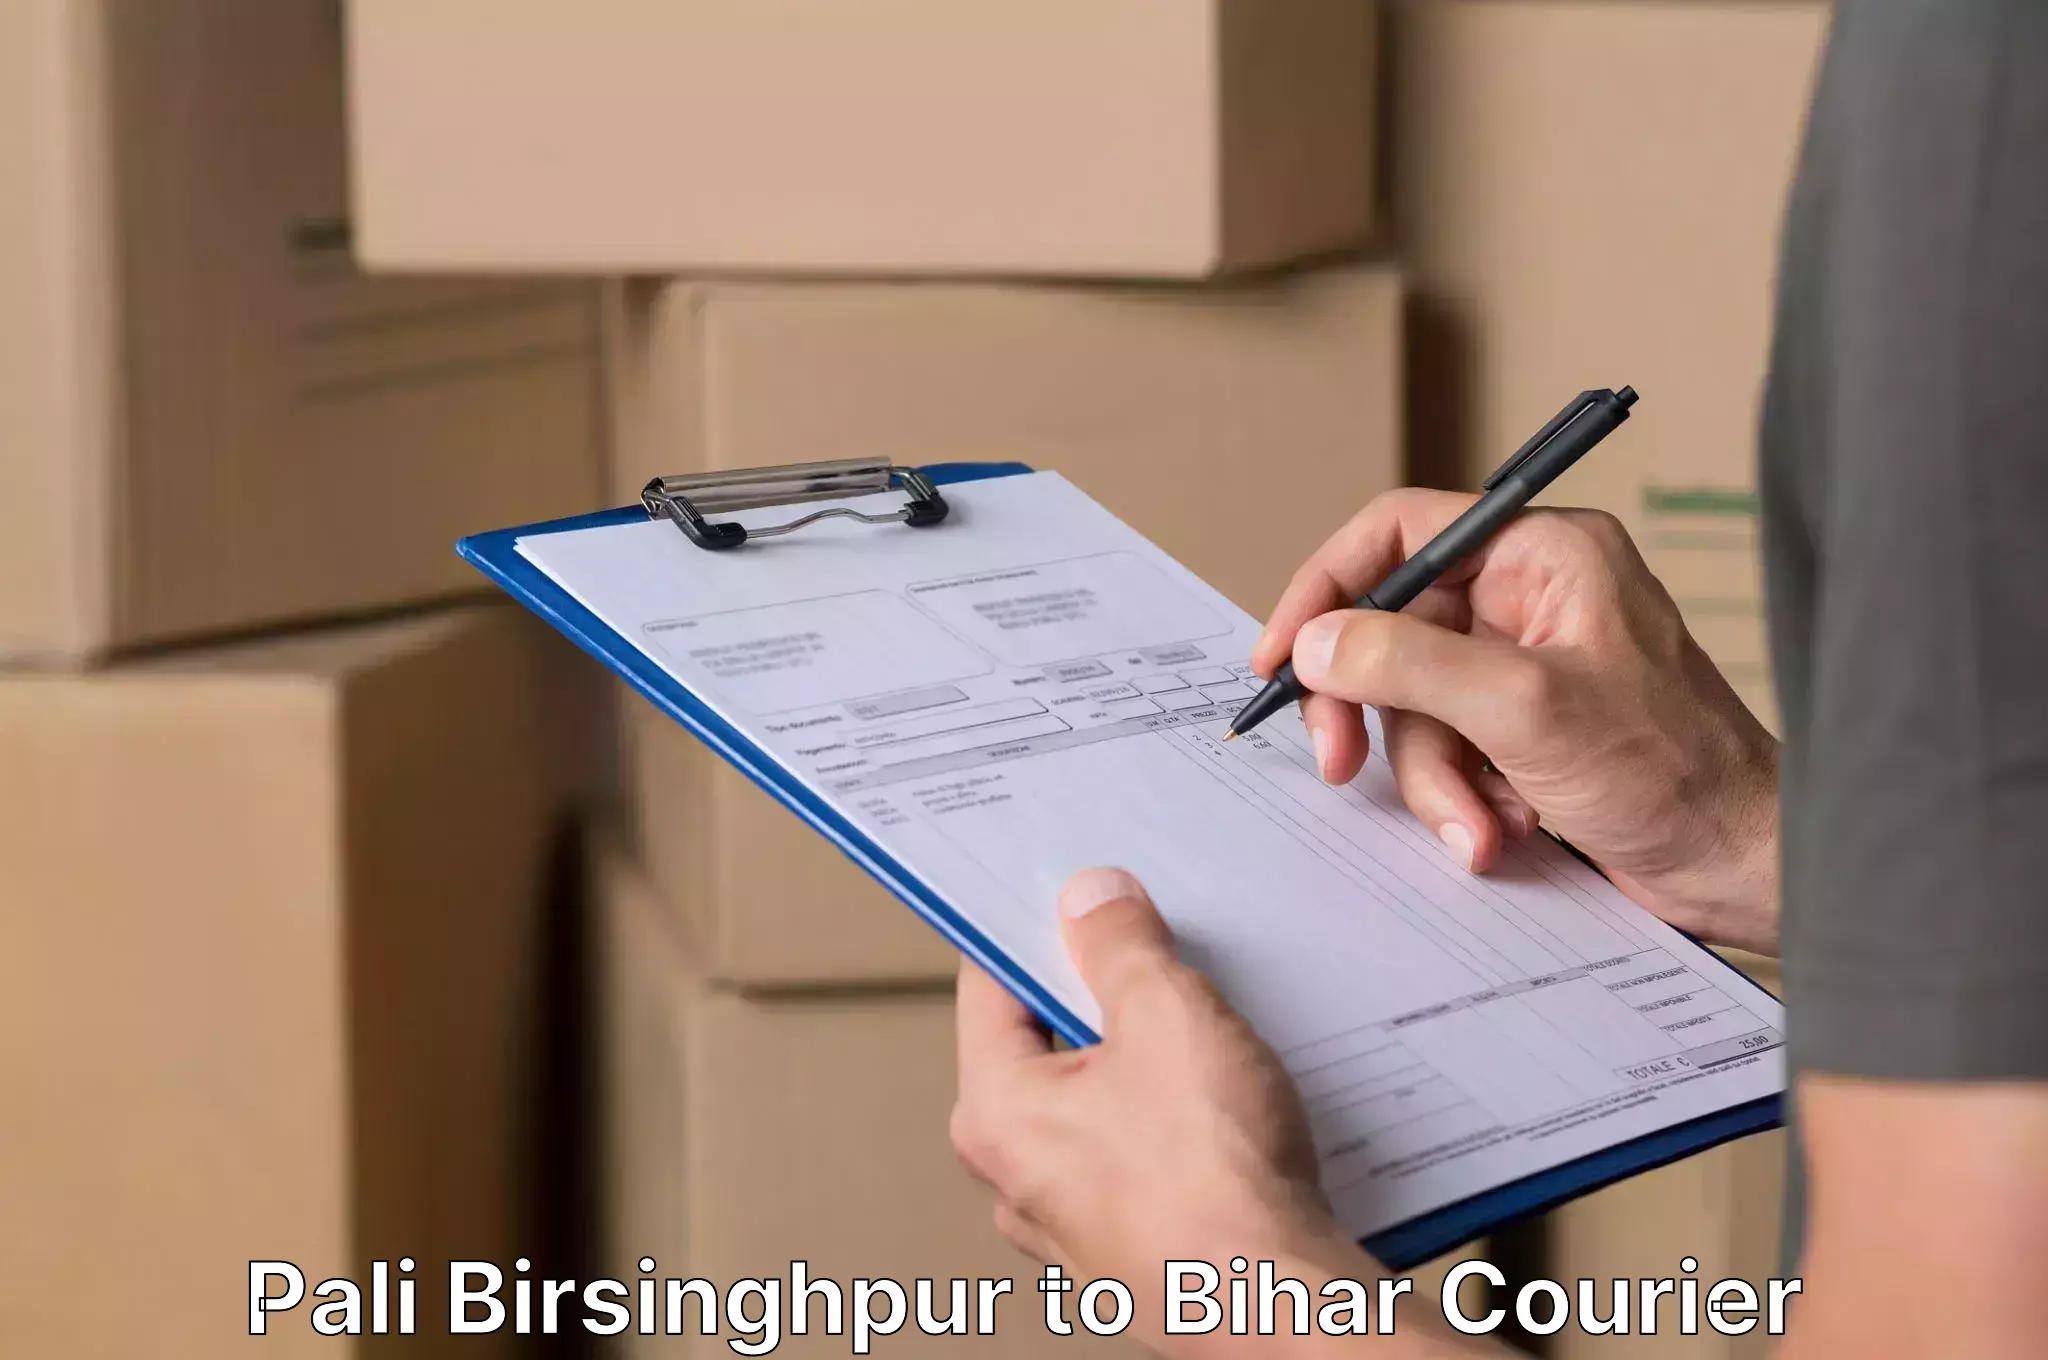 Furniture delivery service in Pali Birsinghpur to Sugauli